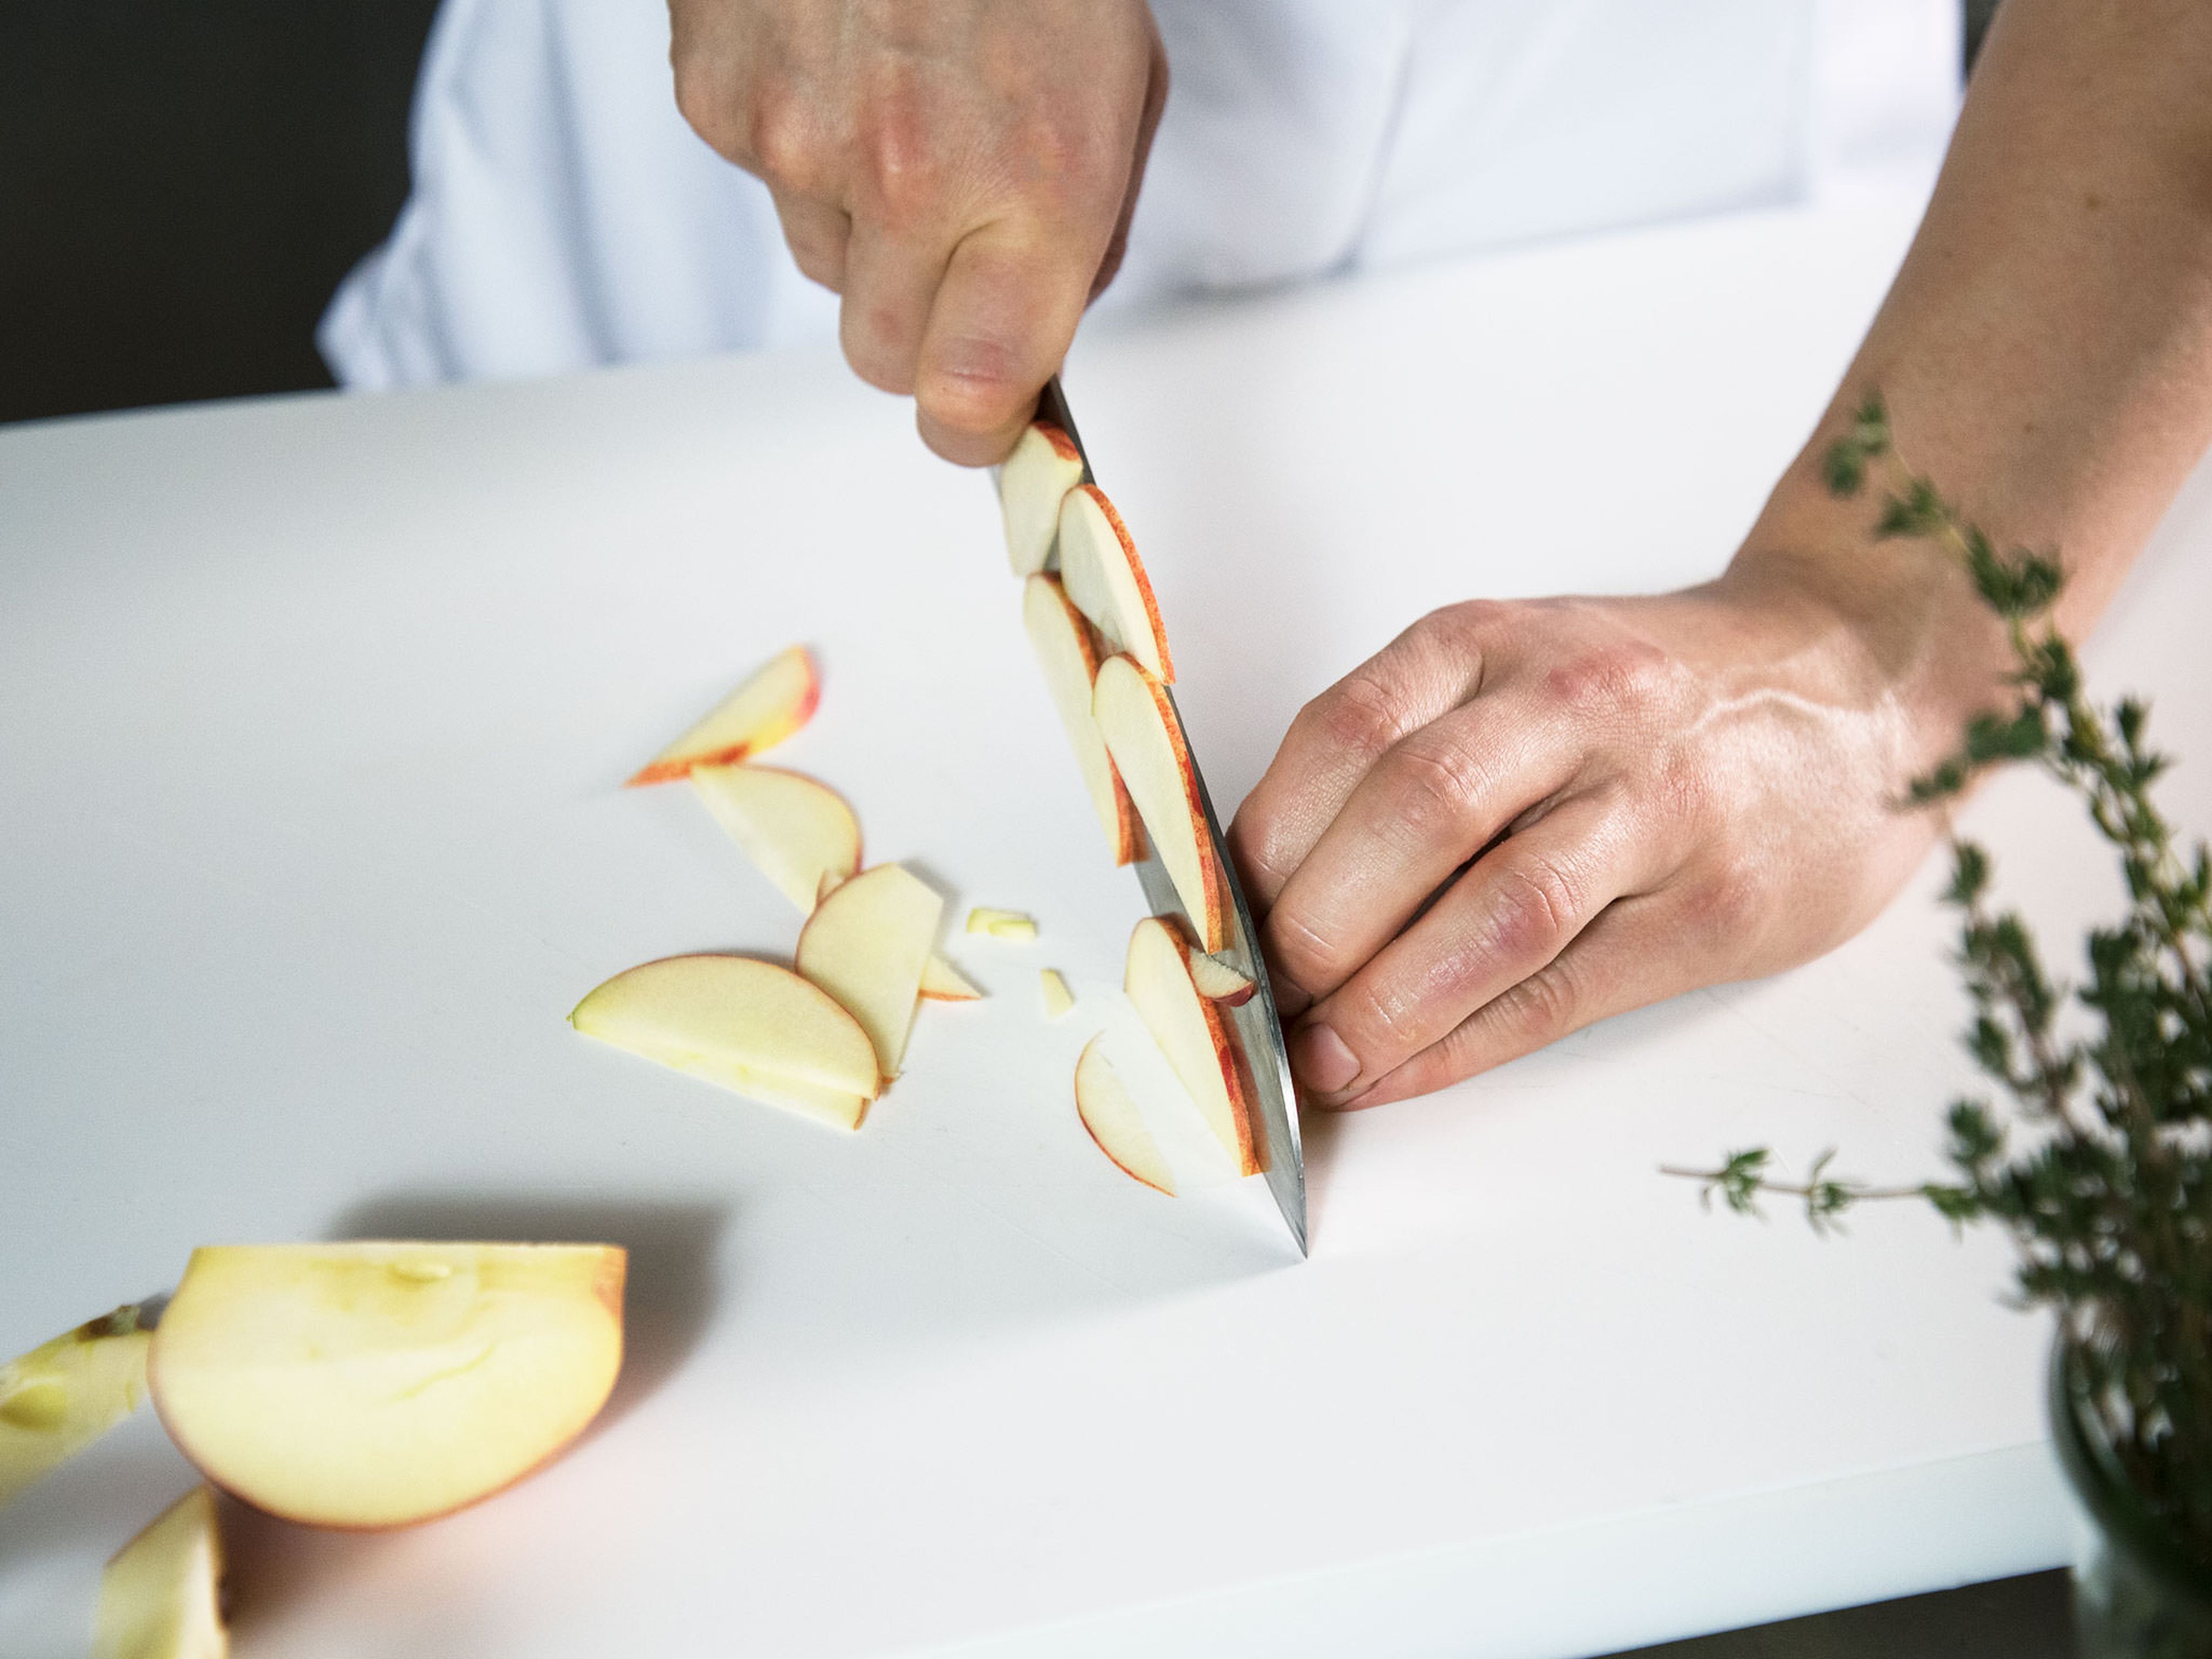 Apfel vierteln, Kerngehäuse entfernen und in dünne Scheiben schneiden. Apfelscheiben direkt in das vorbereitete Dressing legen, damit sie sich nicht bräunlich färben. Karotte schälen und grob raspeln.